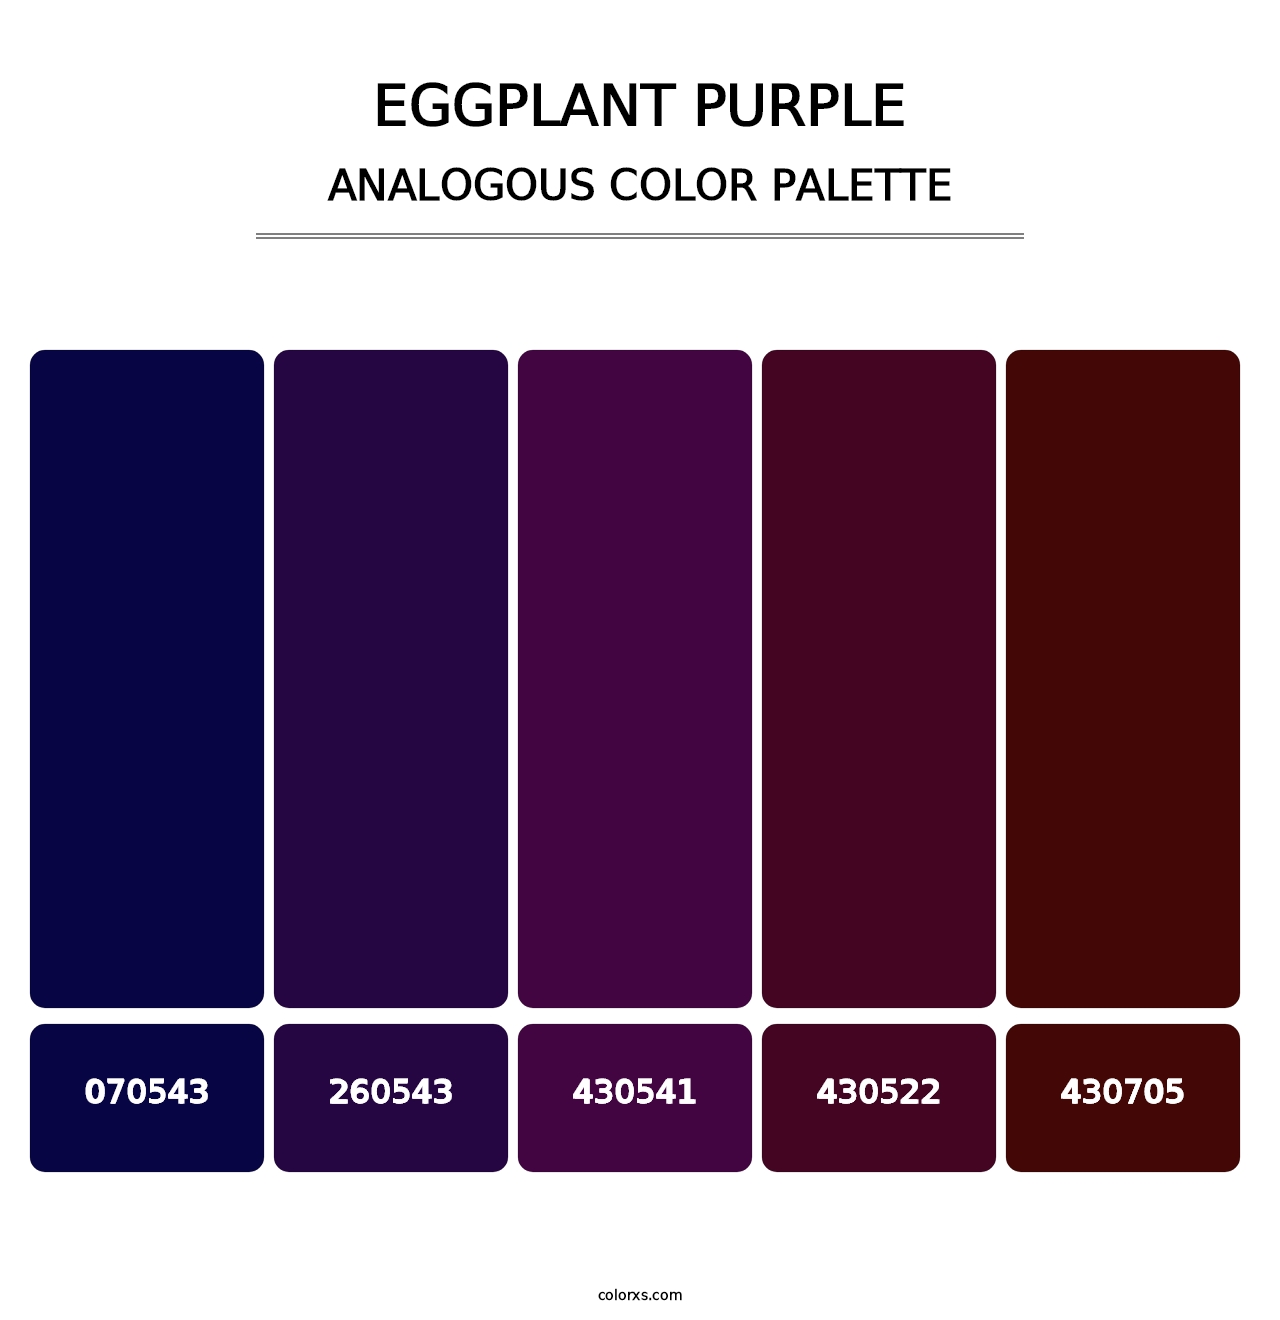 Eggplant Purple - Analogous Color Palette